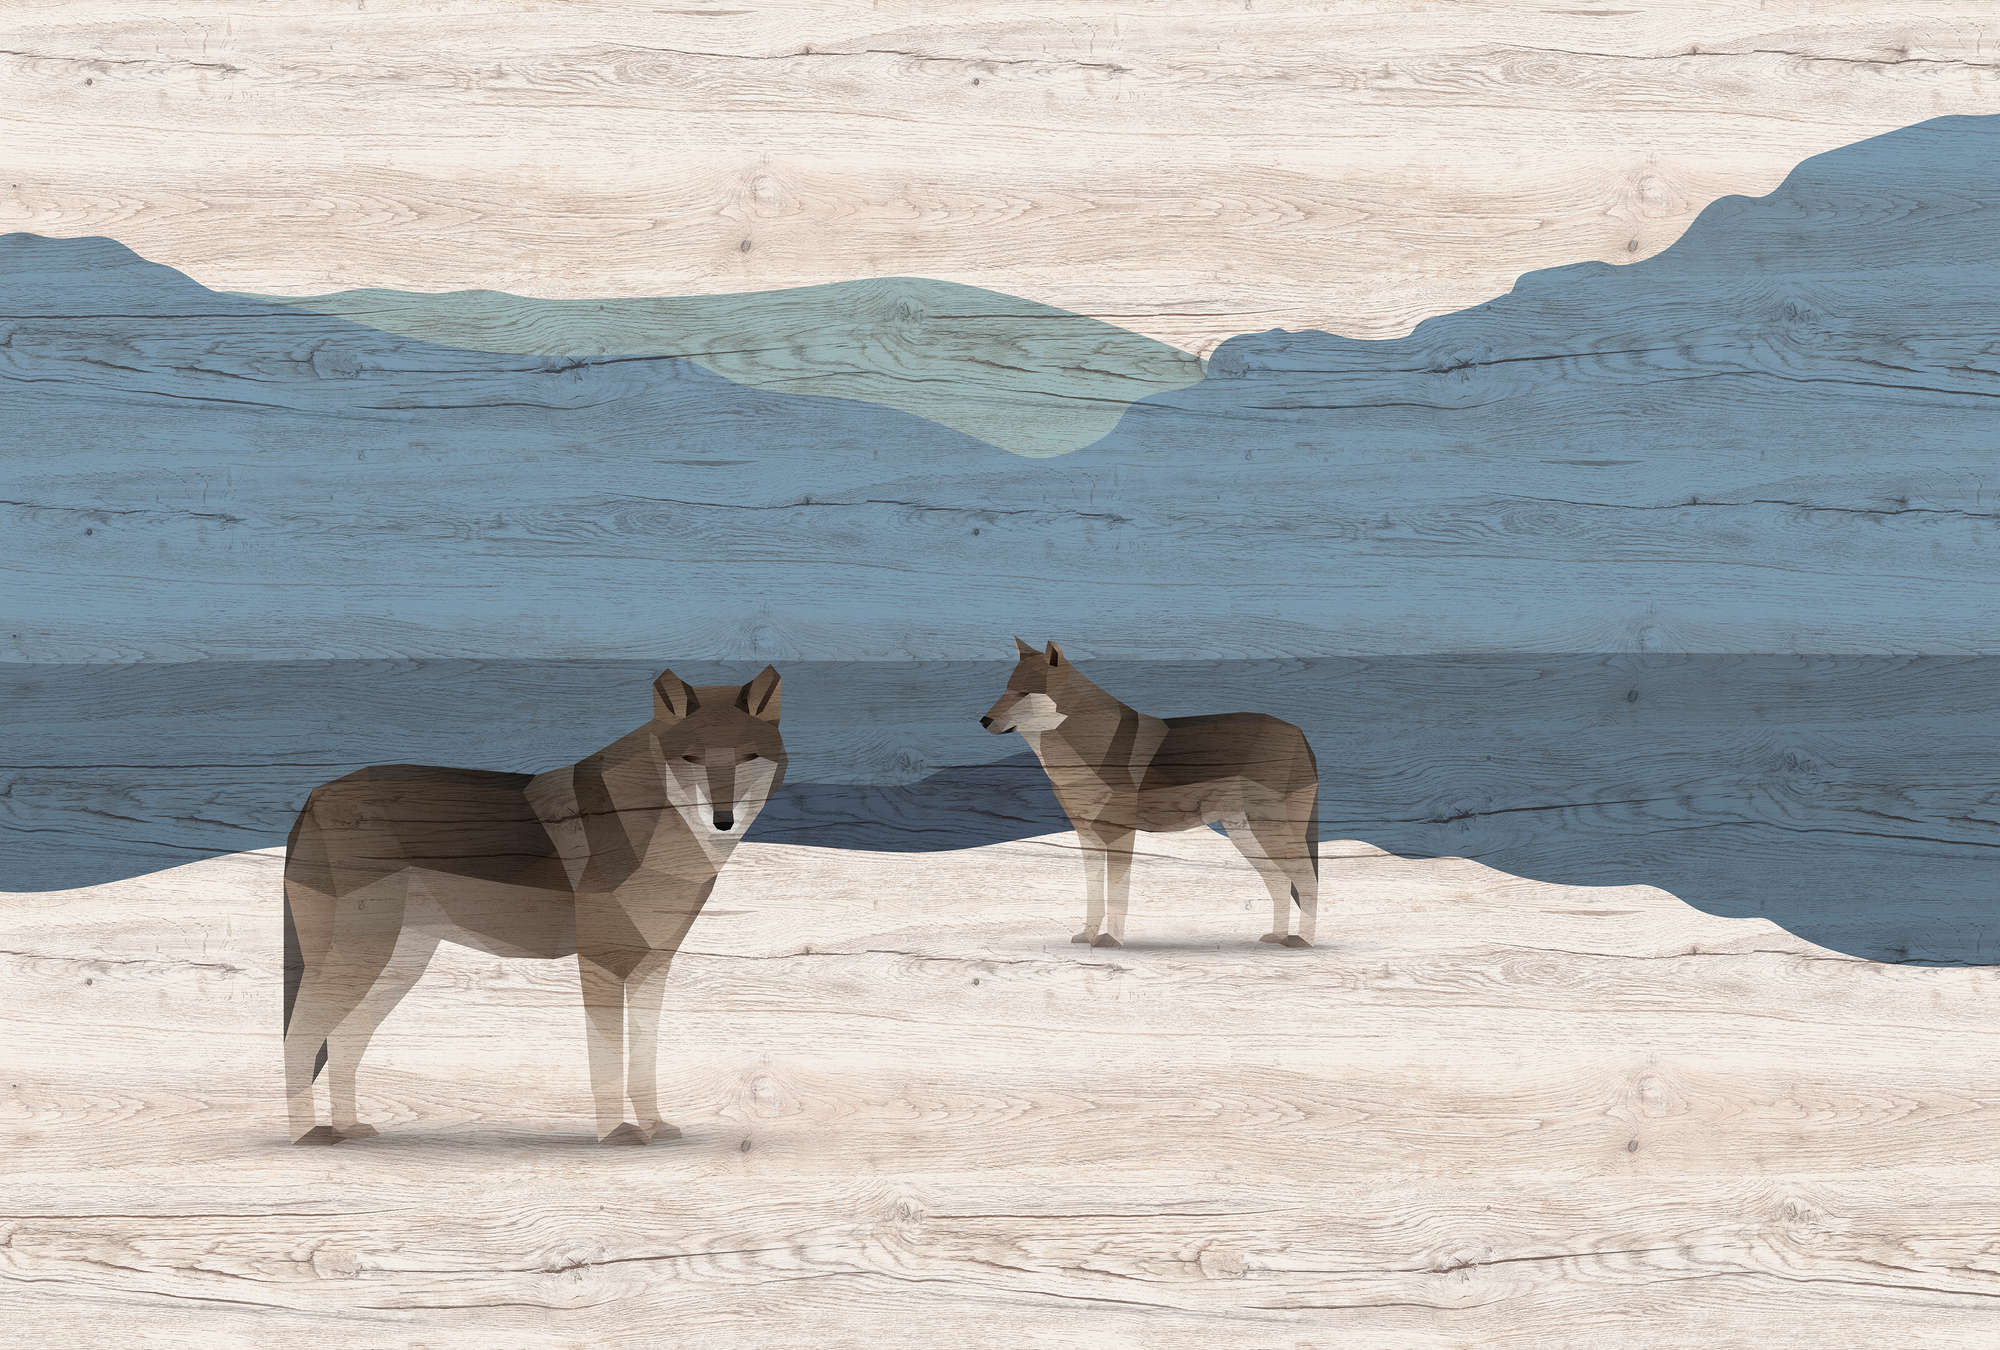             Yukon 1 - Fotomurali Montagne e cani con texture in legno
        